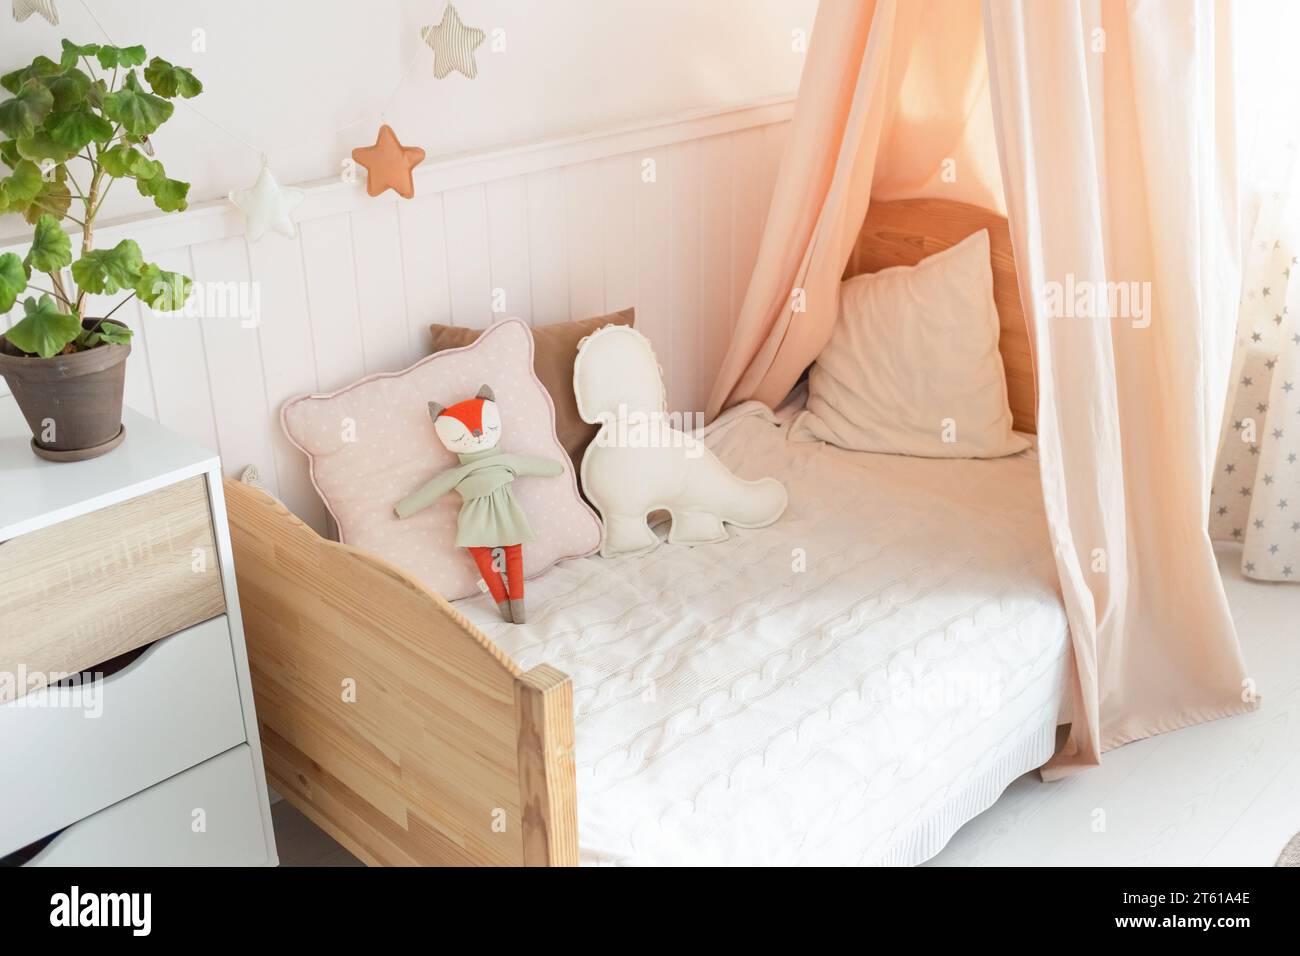 Una cama infantil acogedora y brillante con un dosel tiene lindos juguetes  suaves en la cama. Hay una planta verde al lado de la cama. fondo claro  Fotografía de stock - Alamy